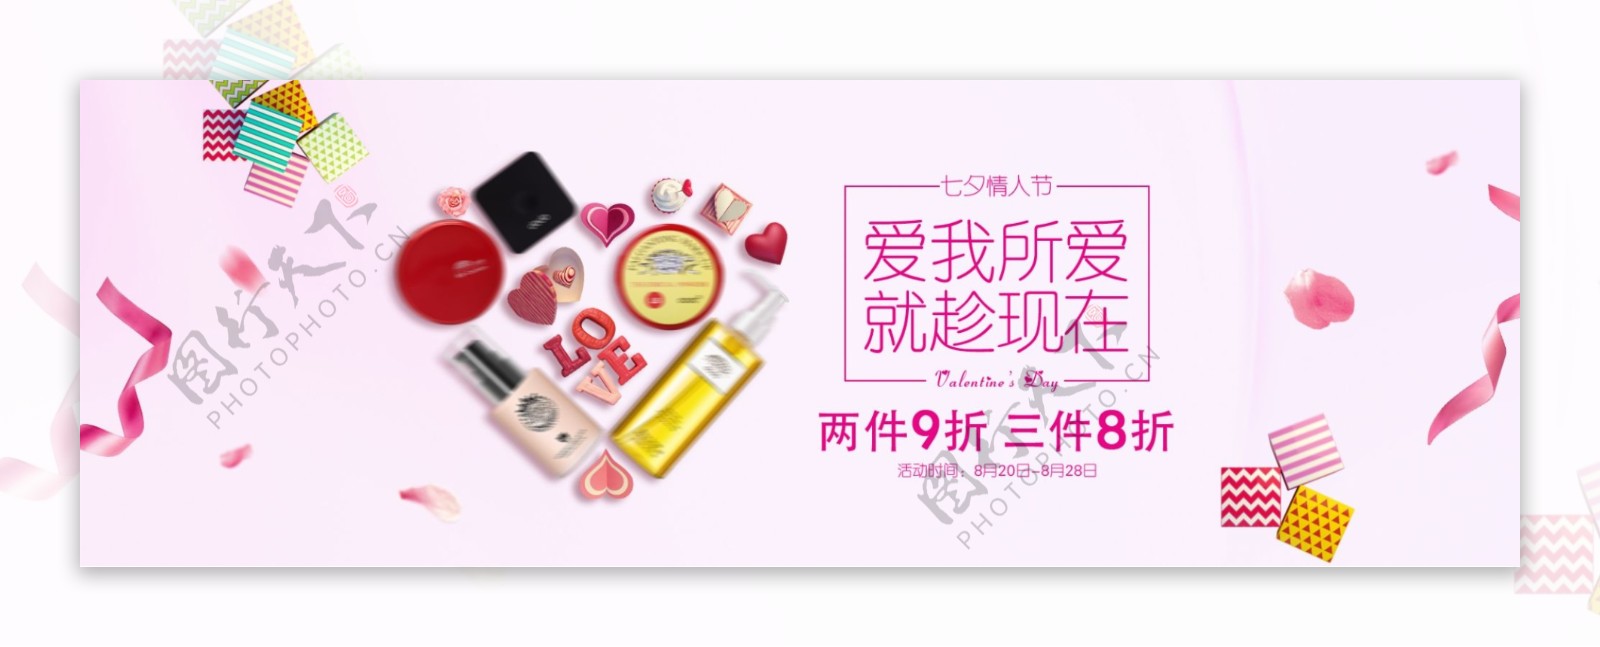 简约时尚美容化妆品banner海报